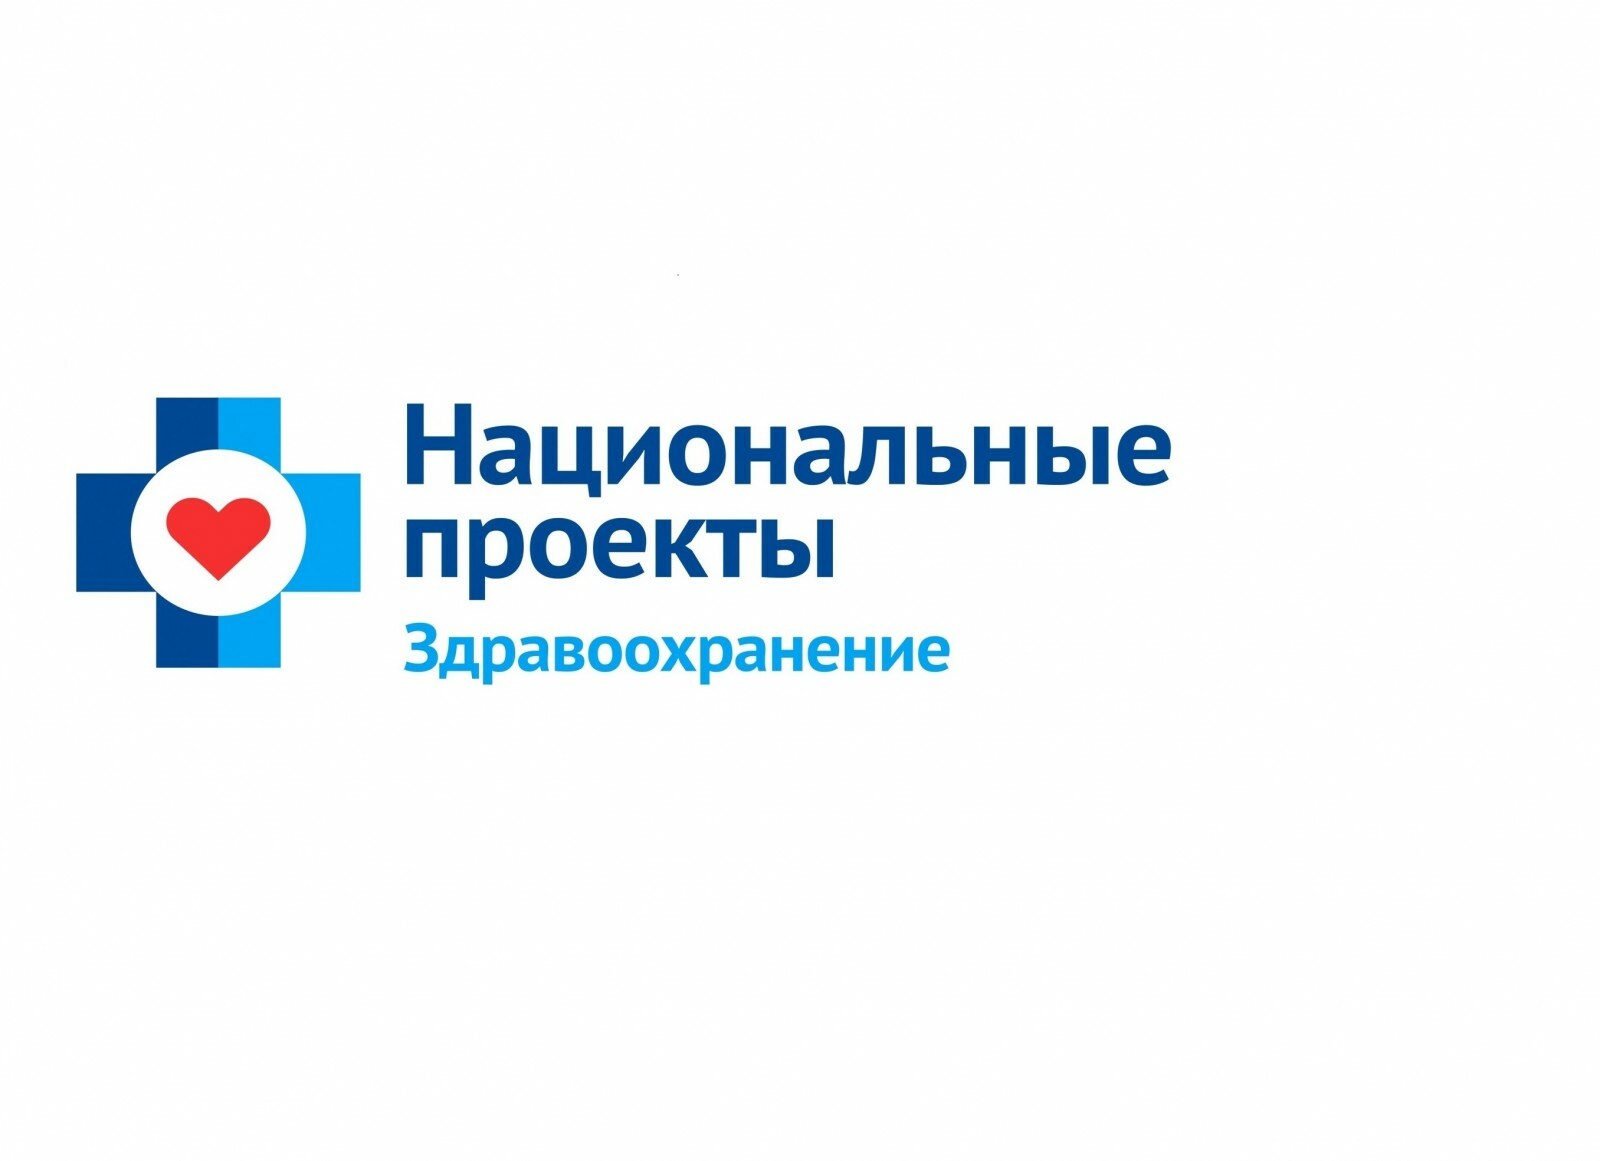 В 2023 году на борьбу с болезнями сердца Башкирия получит 653 млн рублей